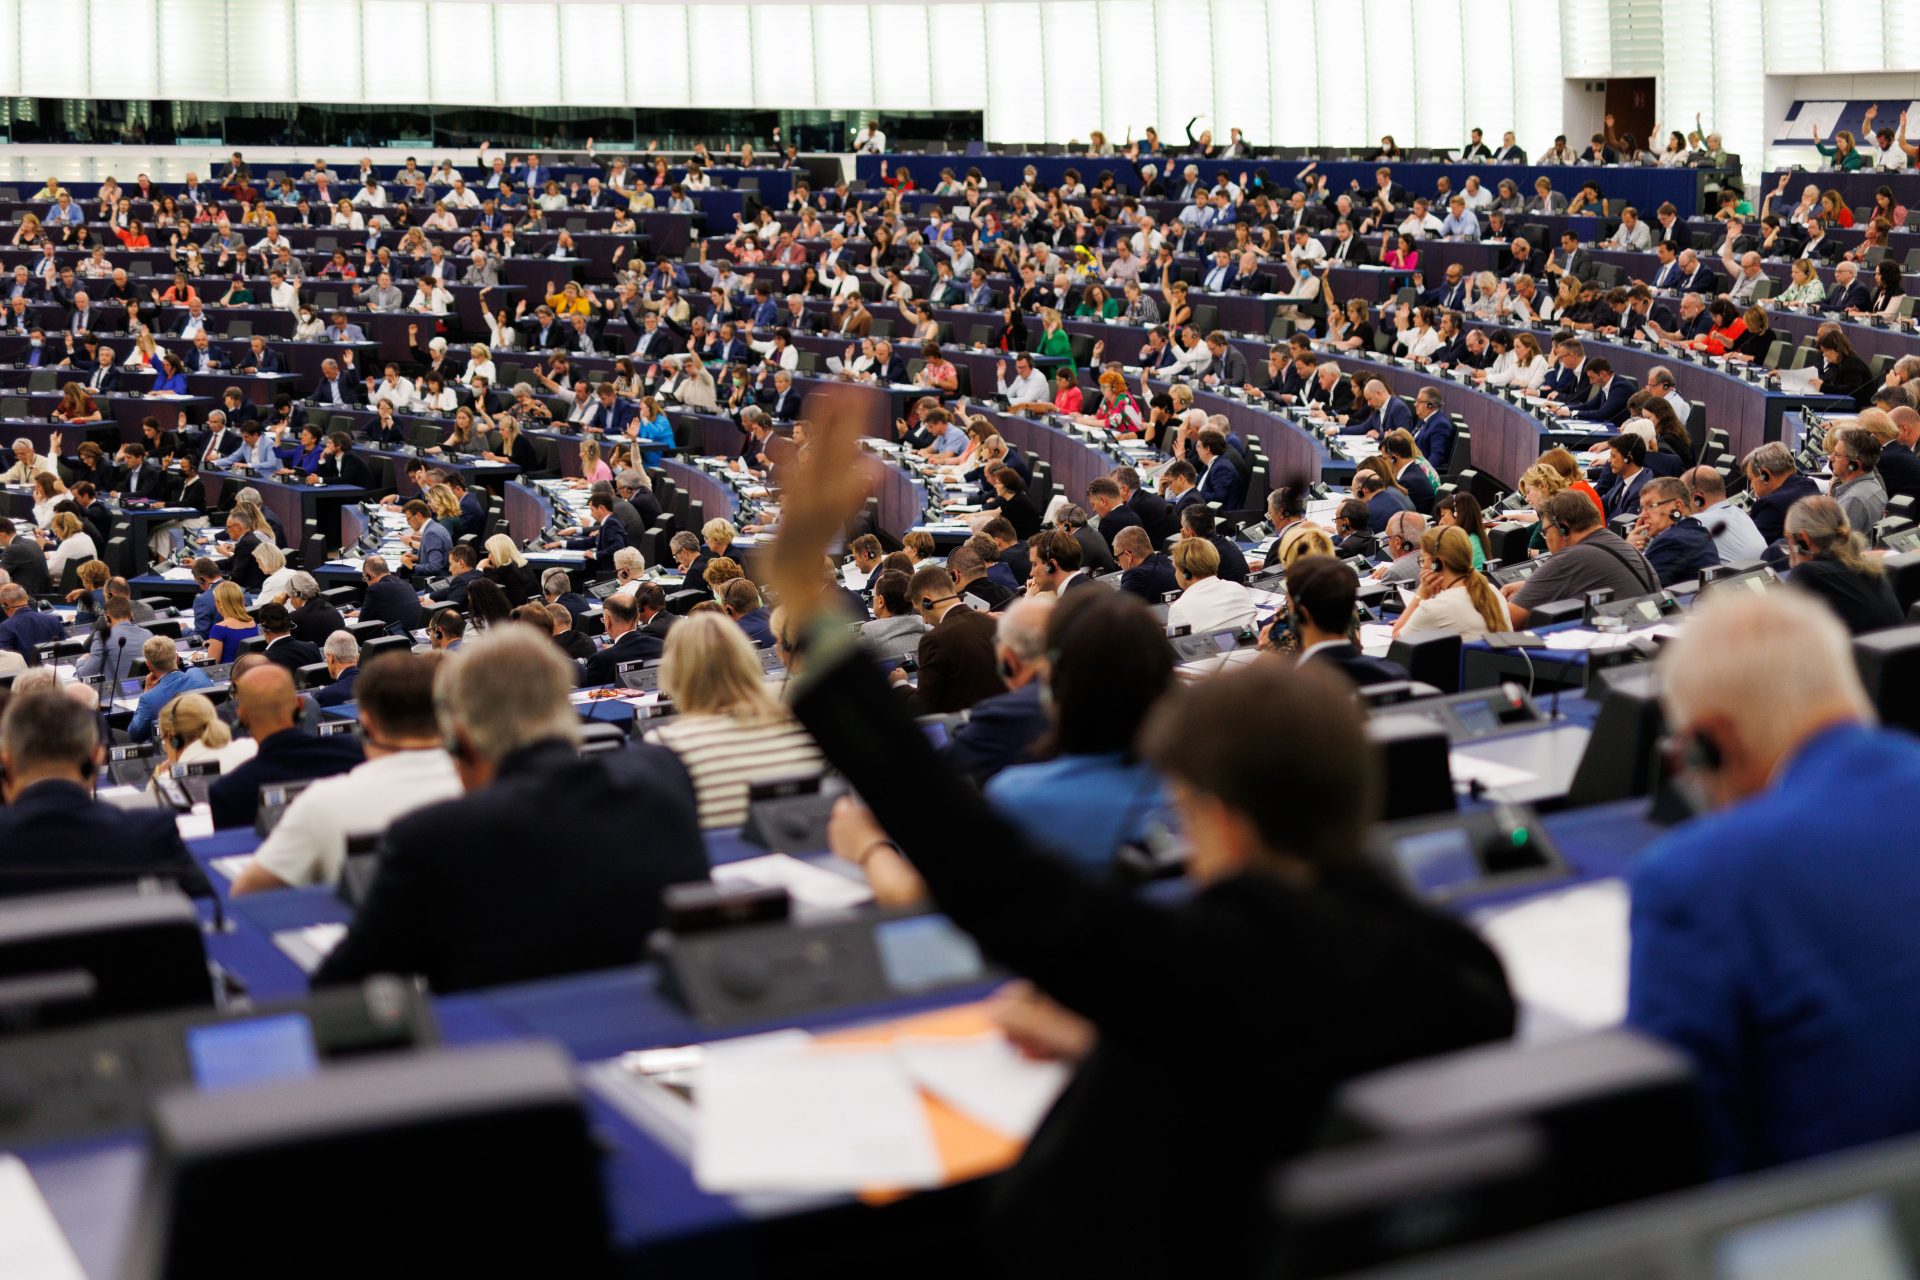 MEP venter på godkjenning av mediefrihetsloven.  Journalister ønsker det velkommen, noen redaktører motsetter seg det